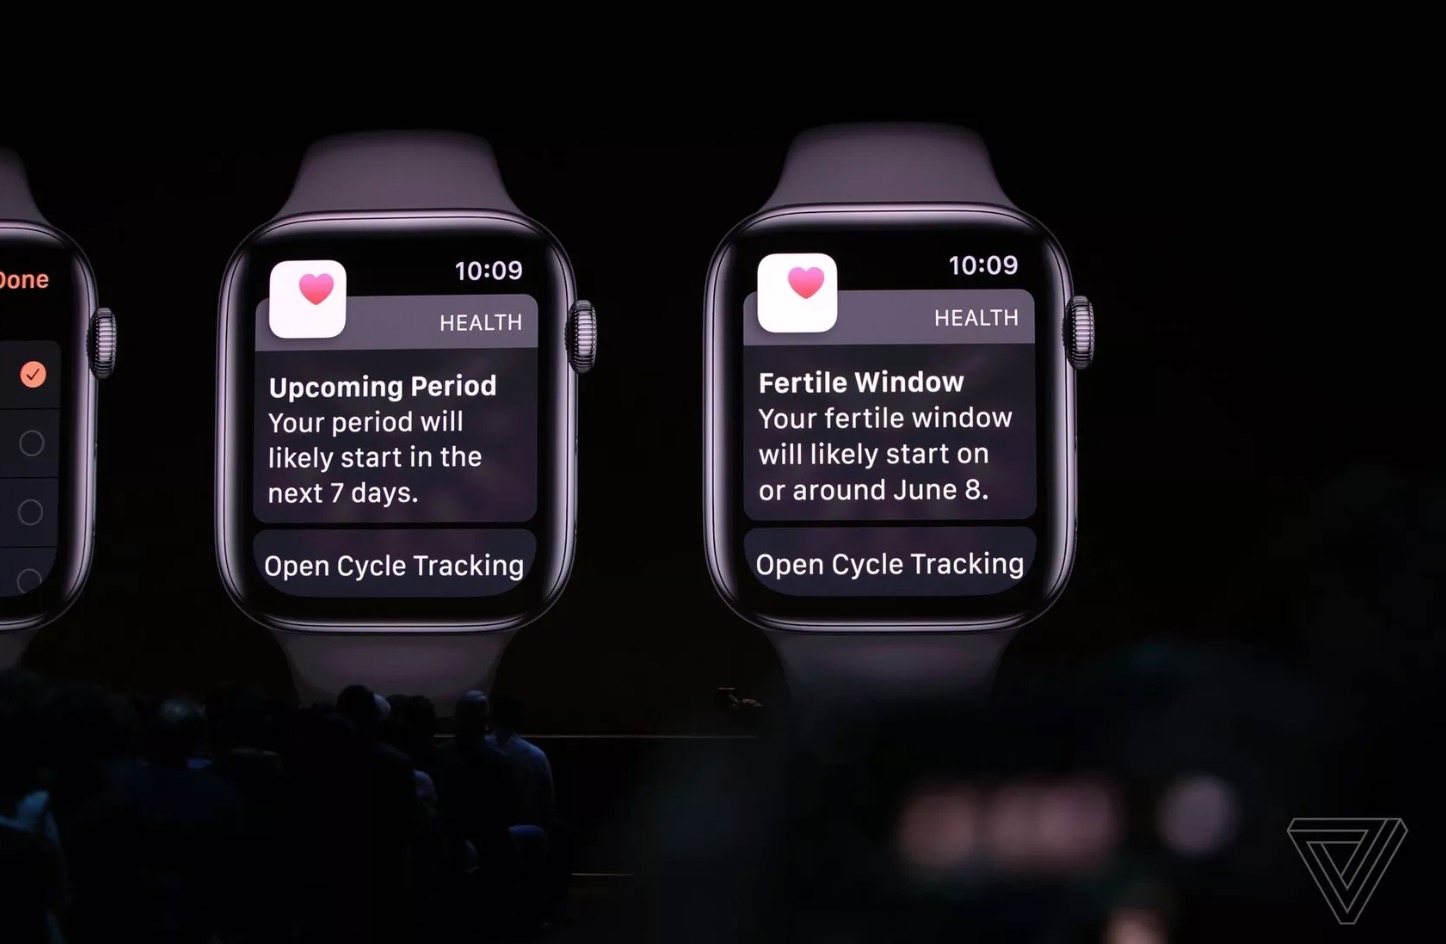 [WWDC19] Apple ra mắt watchOS 6 với App Store
riêng, tvOS 13, hỗ trợ nhiều tài khoản, dùng được với tay
cầm Xbox, PlayStation